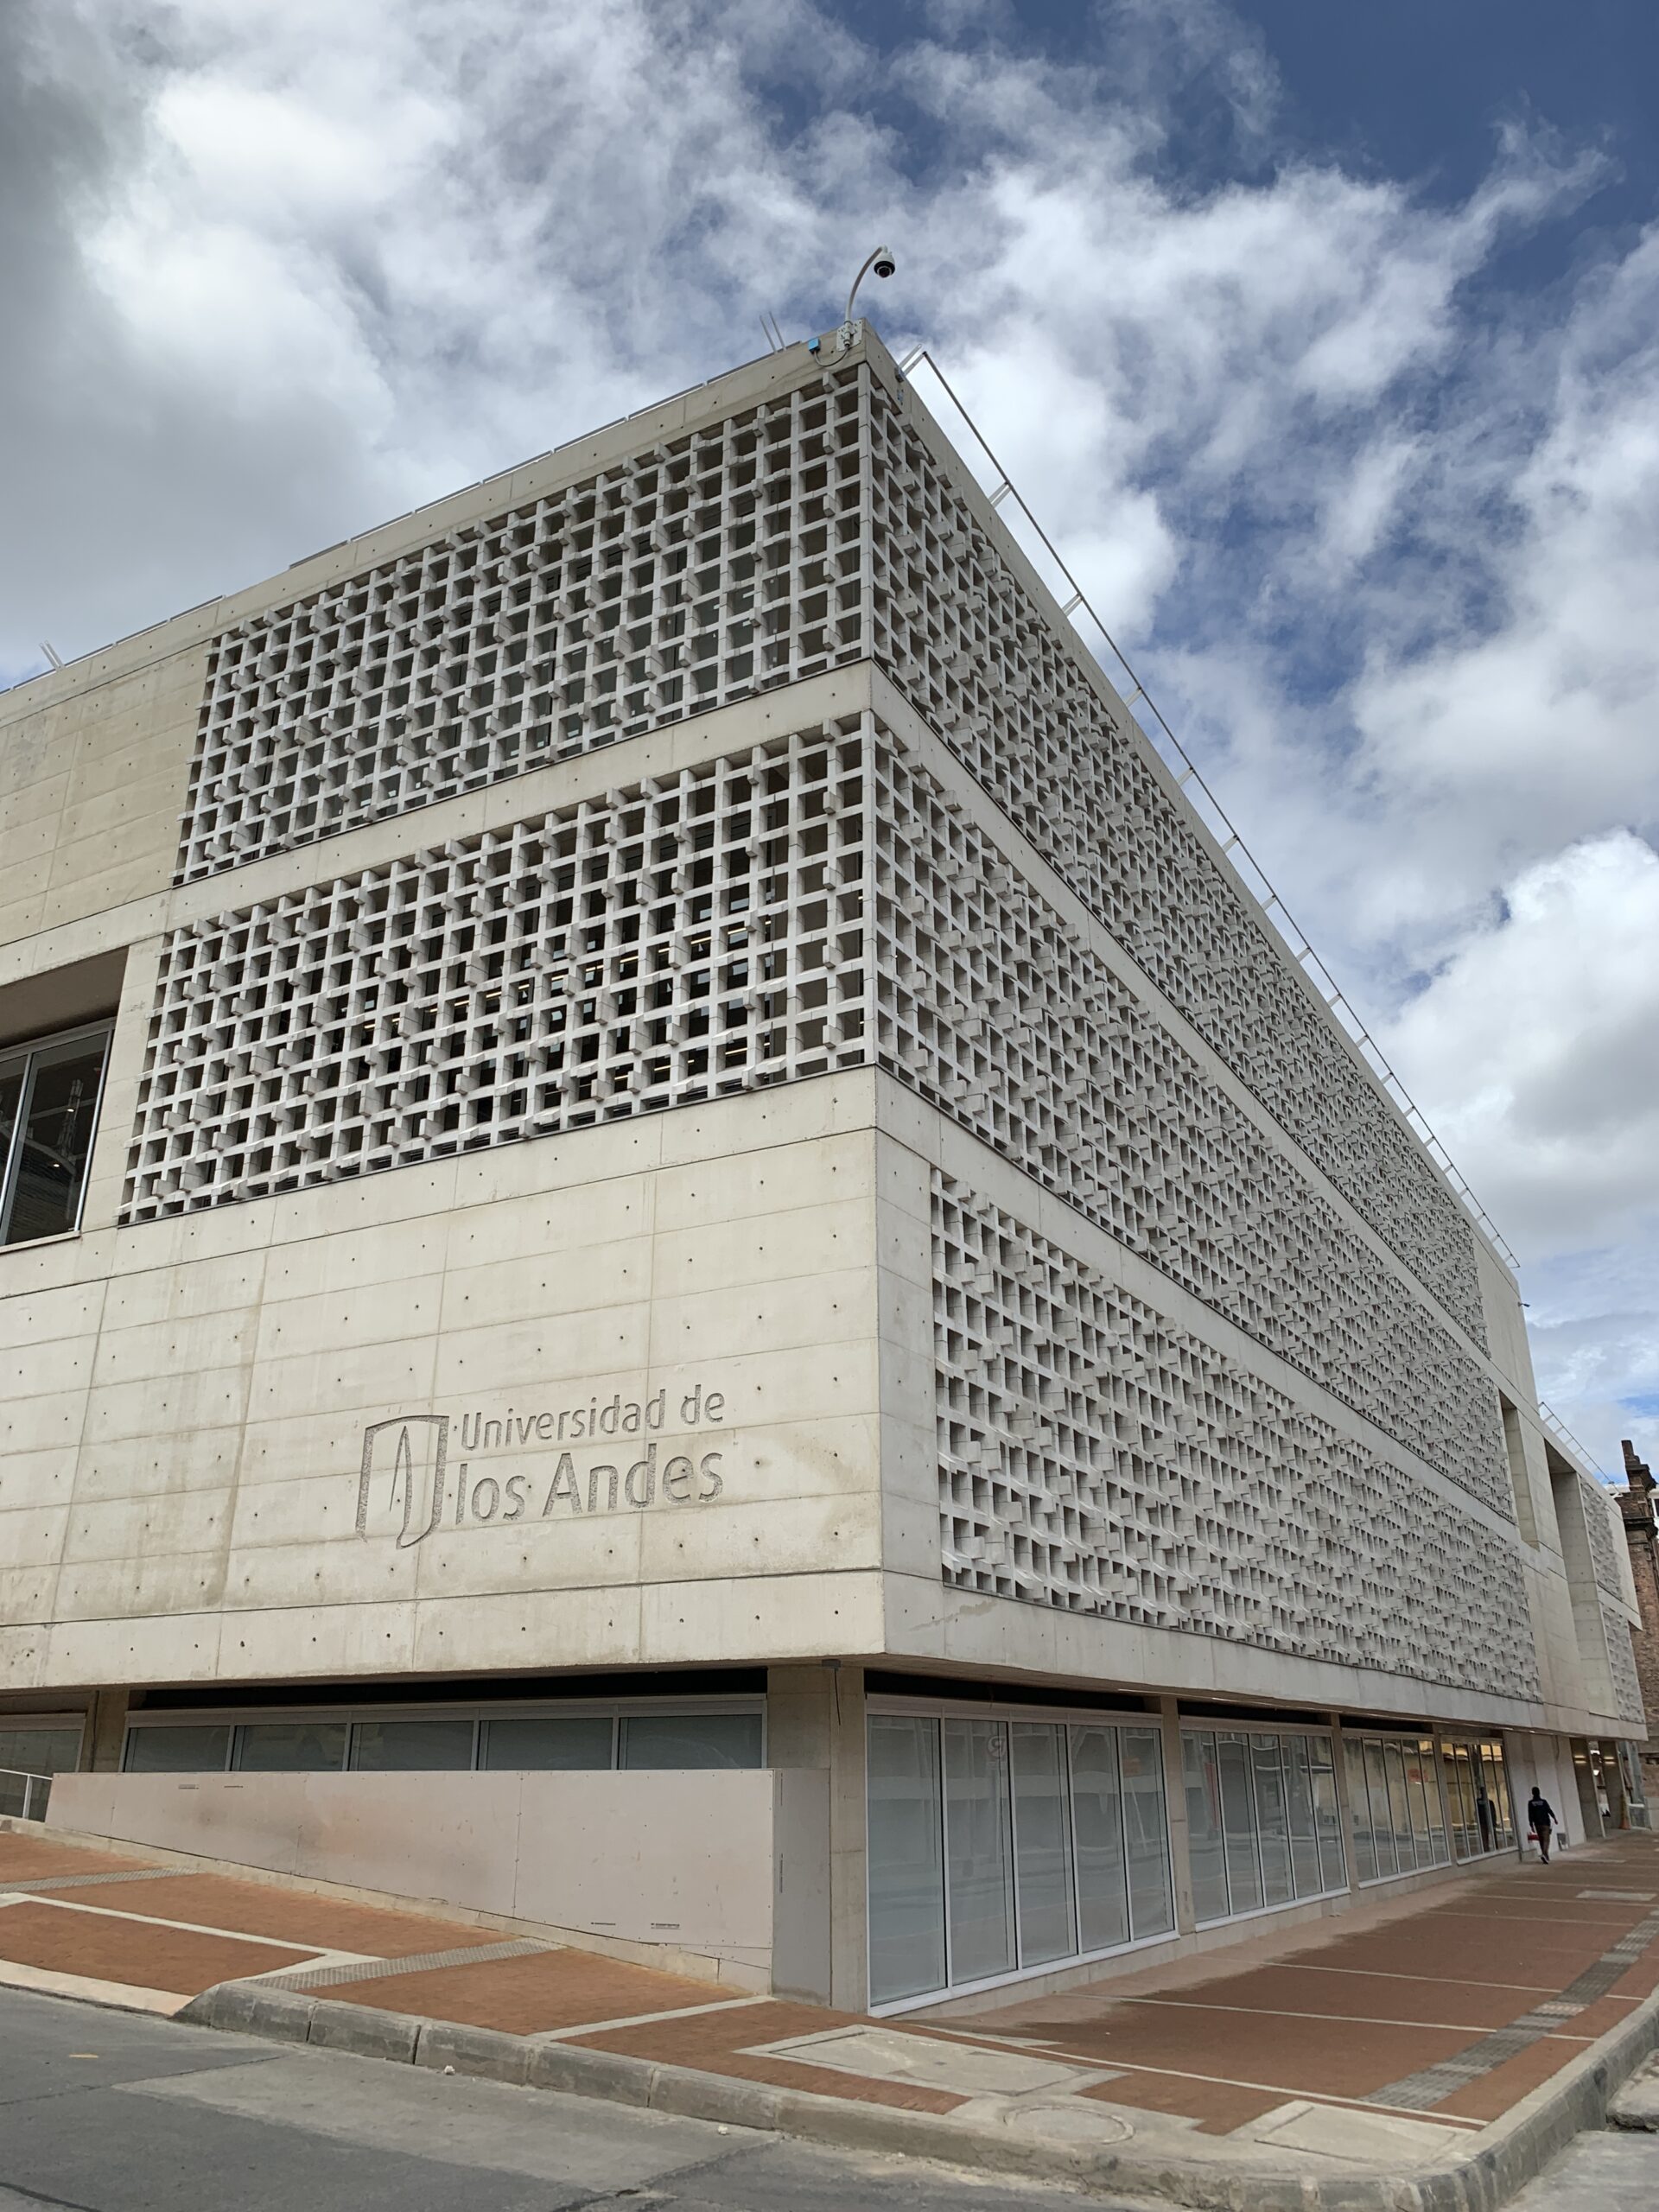 Celosias centro civico universidad de los andes